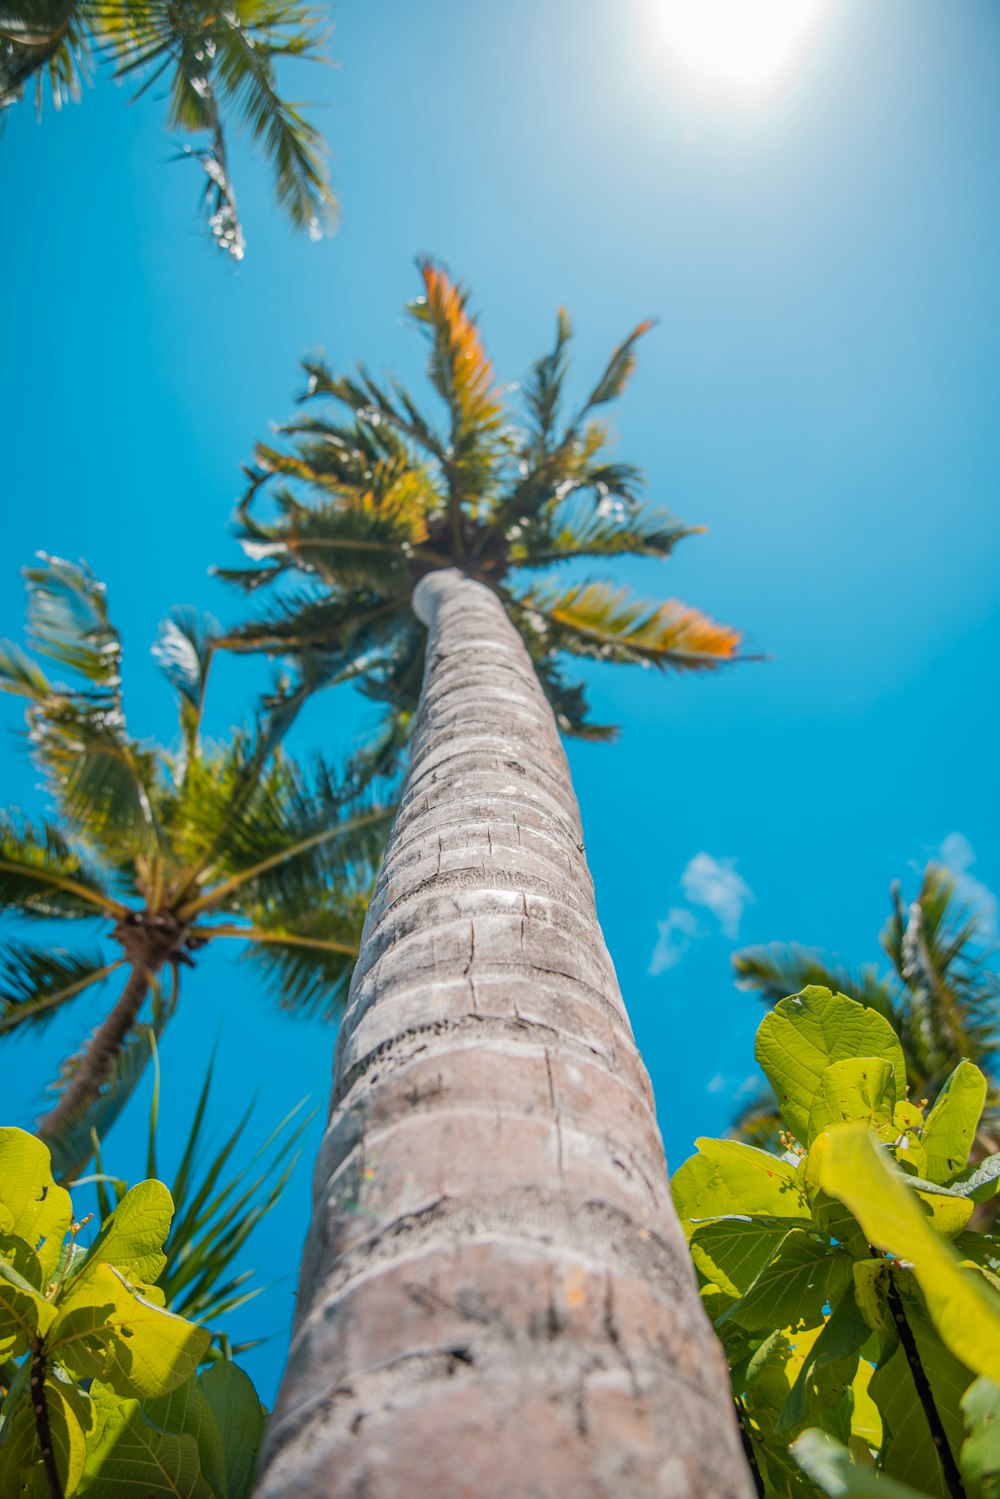 alberi di cocco sotto il cielo blu